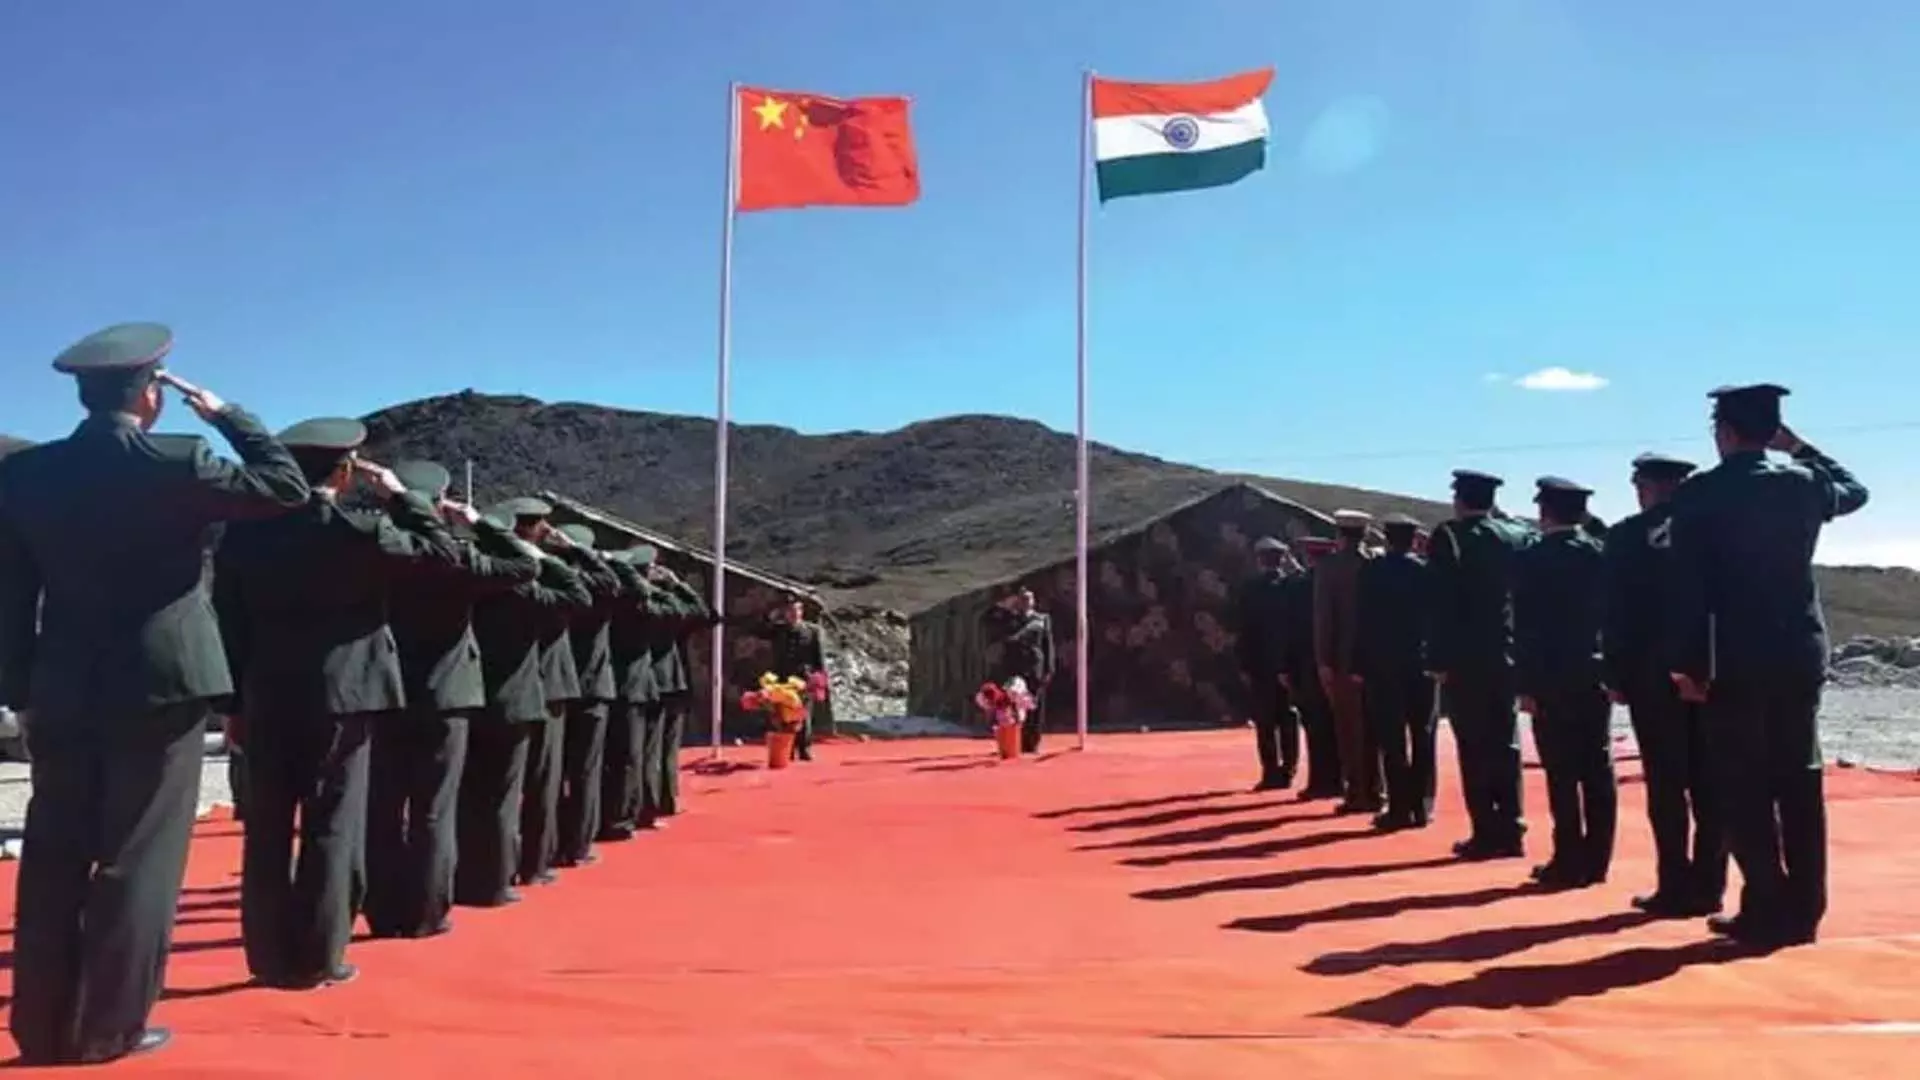 भारत, चीन ने एलएसी मुद्दों पर विचारों का आदान-प्रदान किया